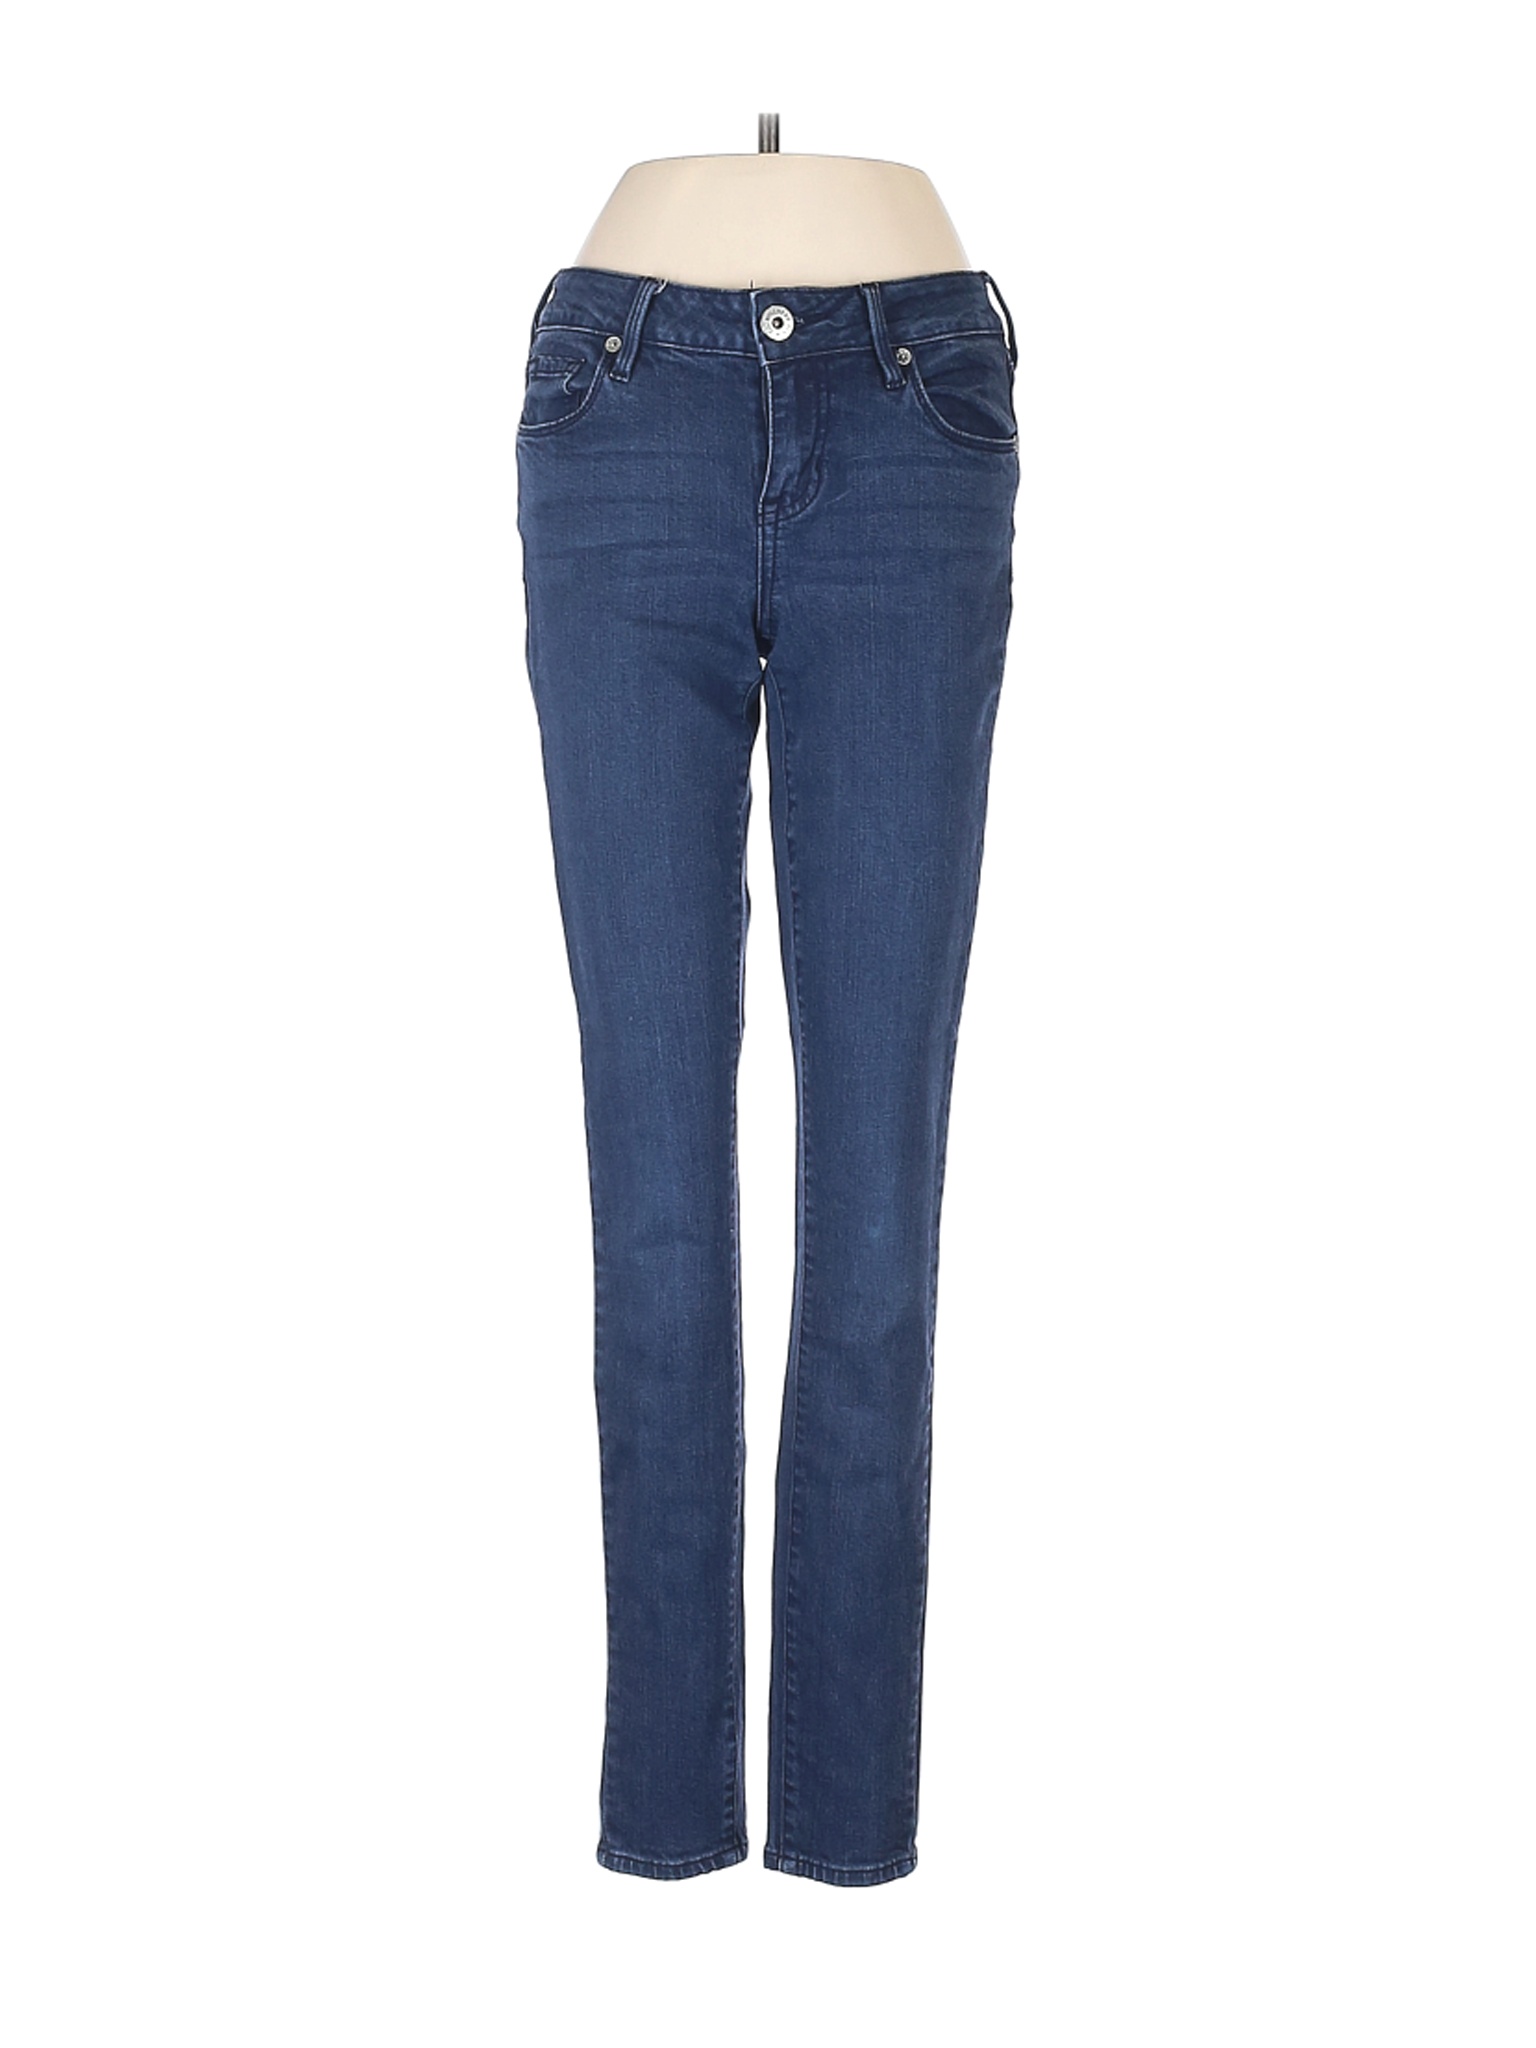 Bullhead Women Blue Jeans 1 | eBay